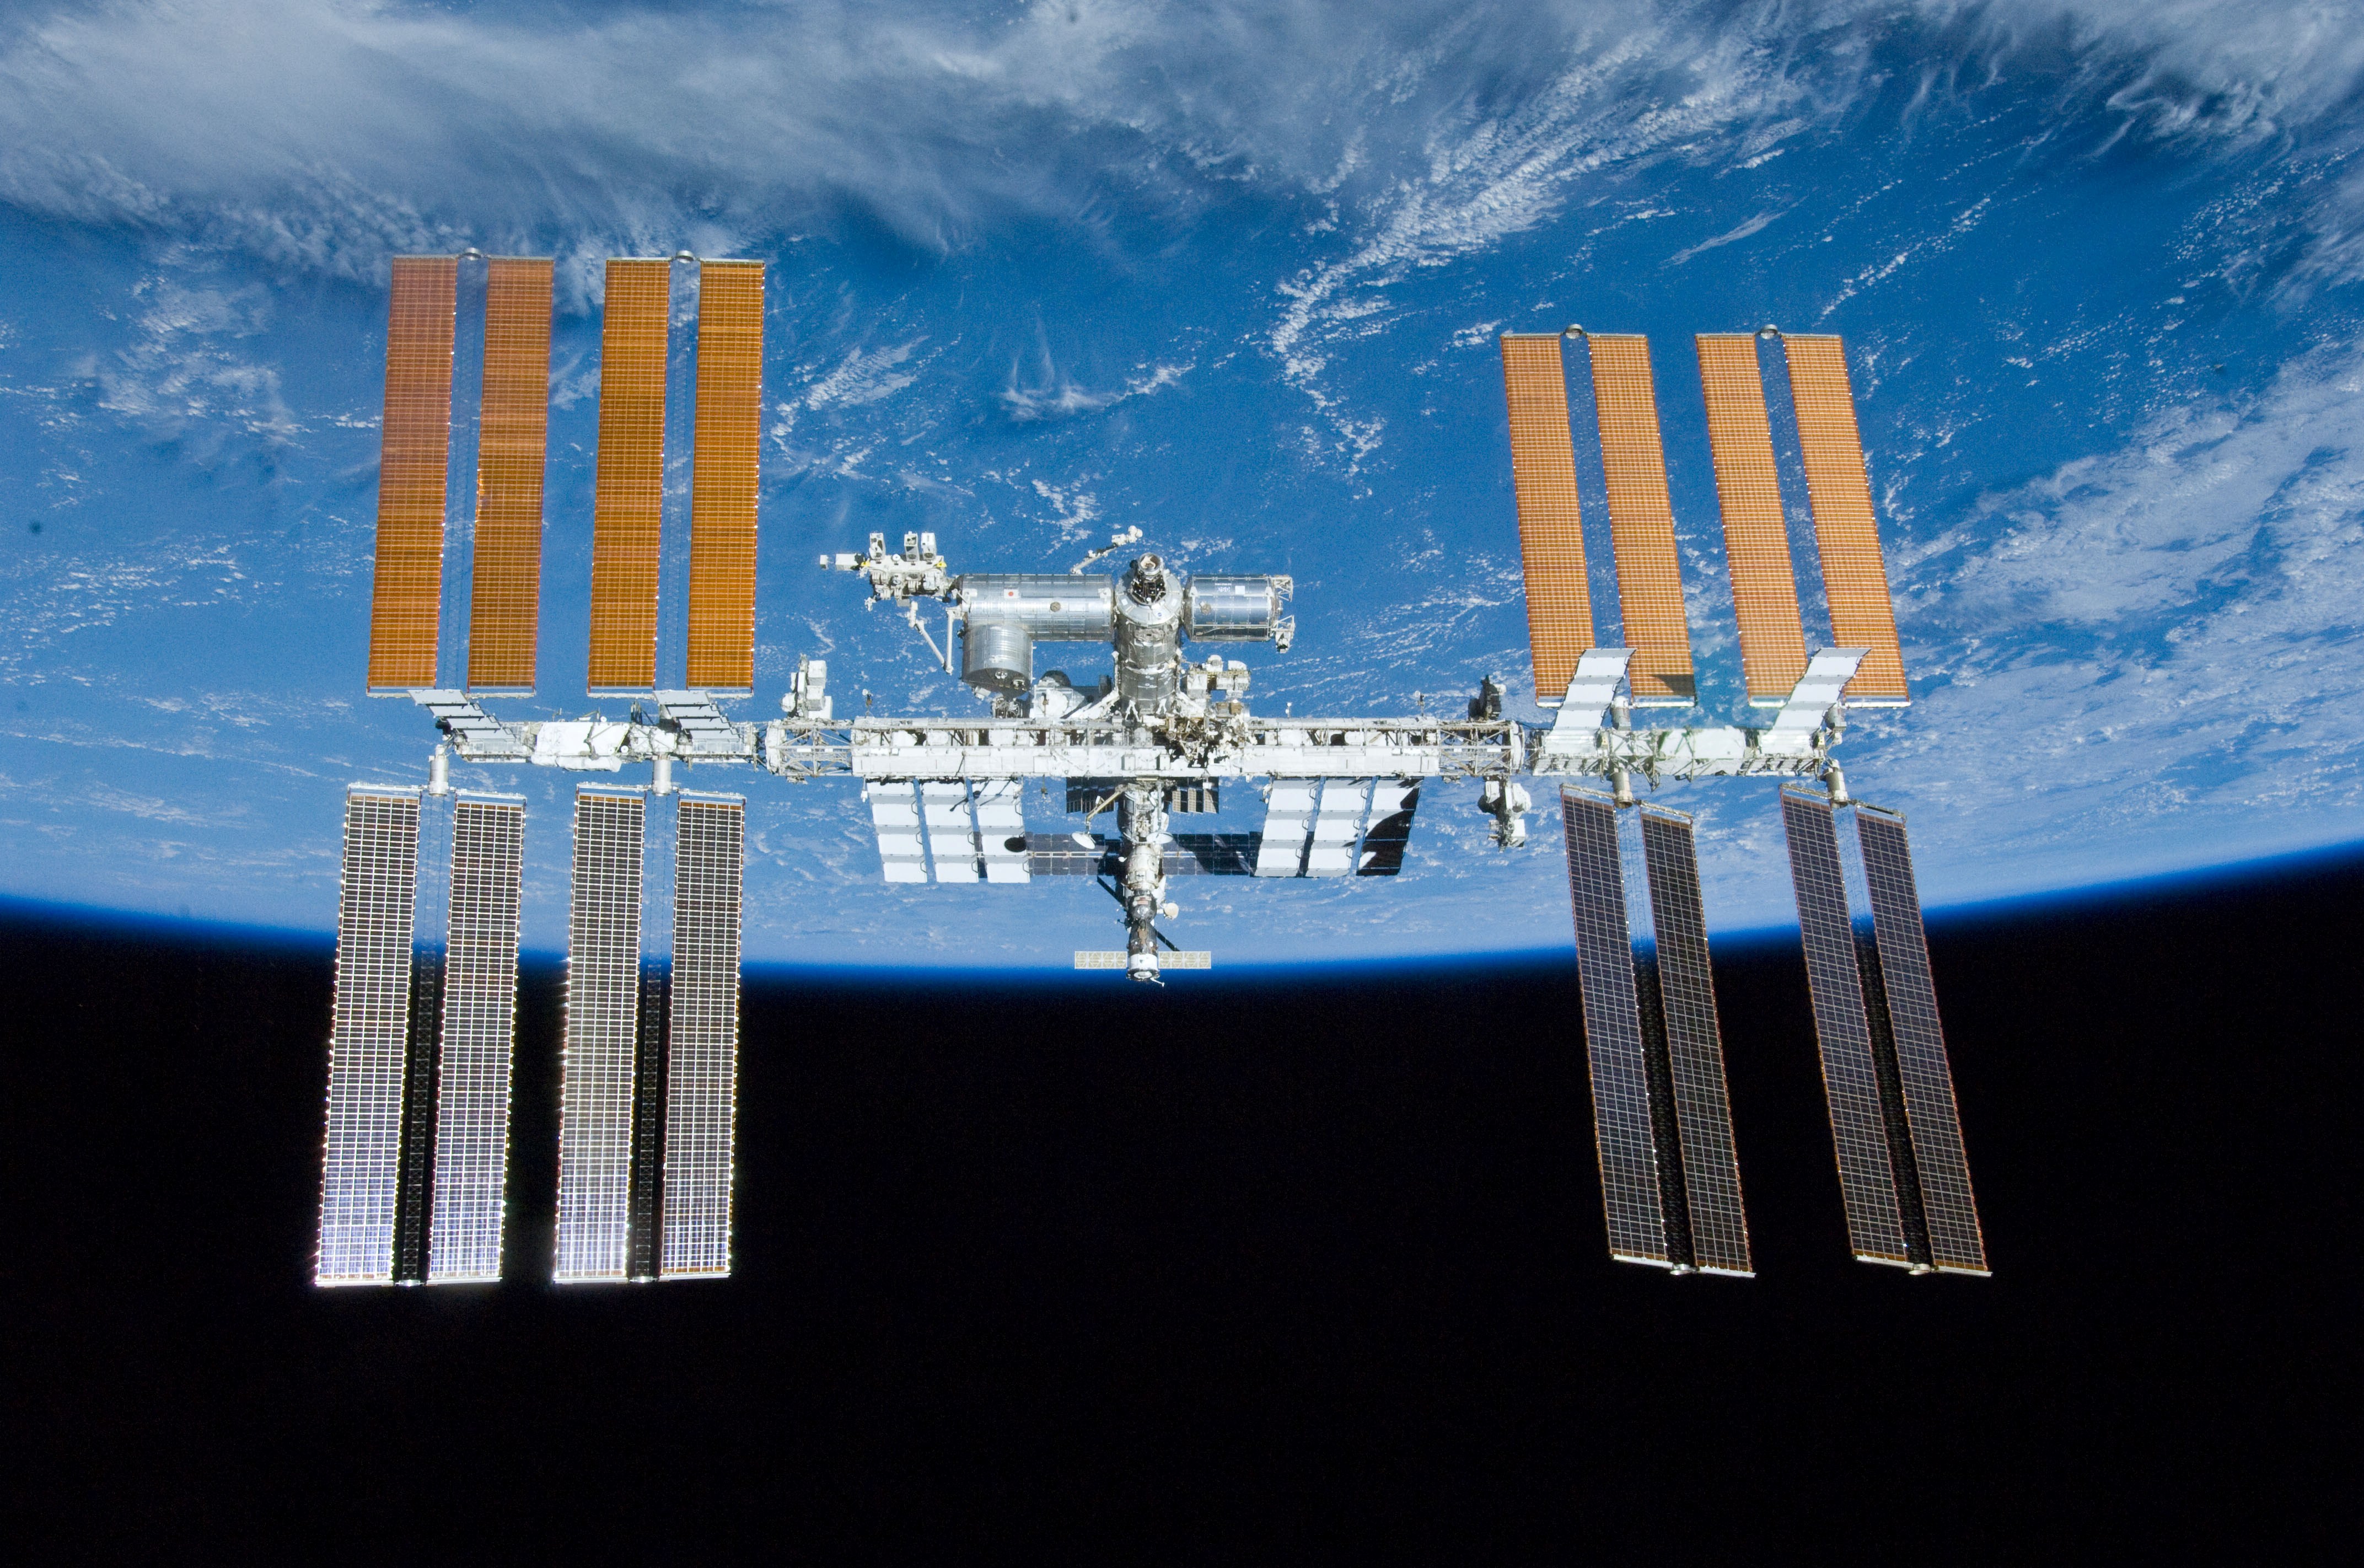 Sulla ISS per ora  la “pace” è d’obbligo